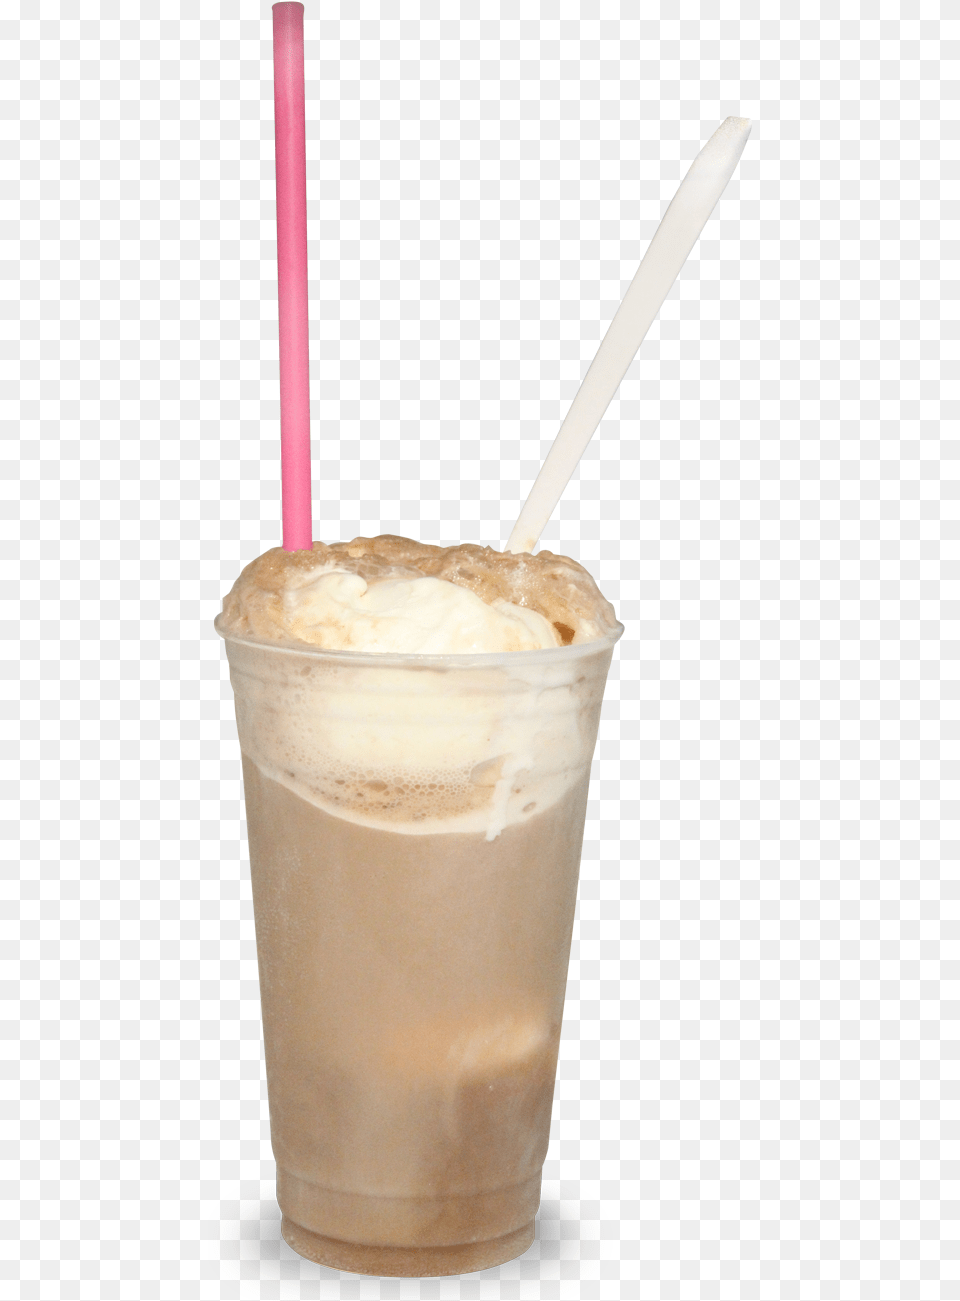 Horchata, Beverage, Milk, Juice, Cup Png Image